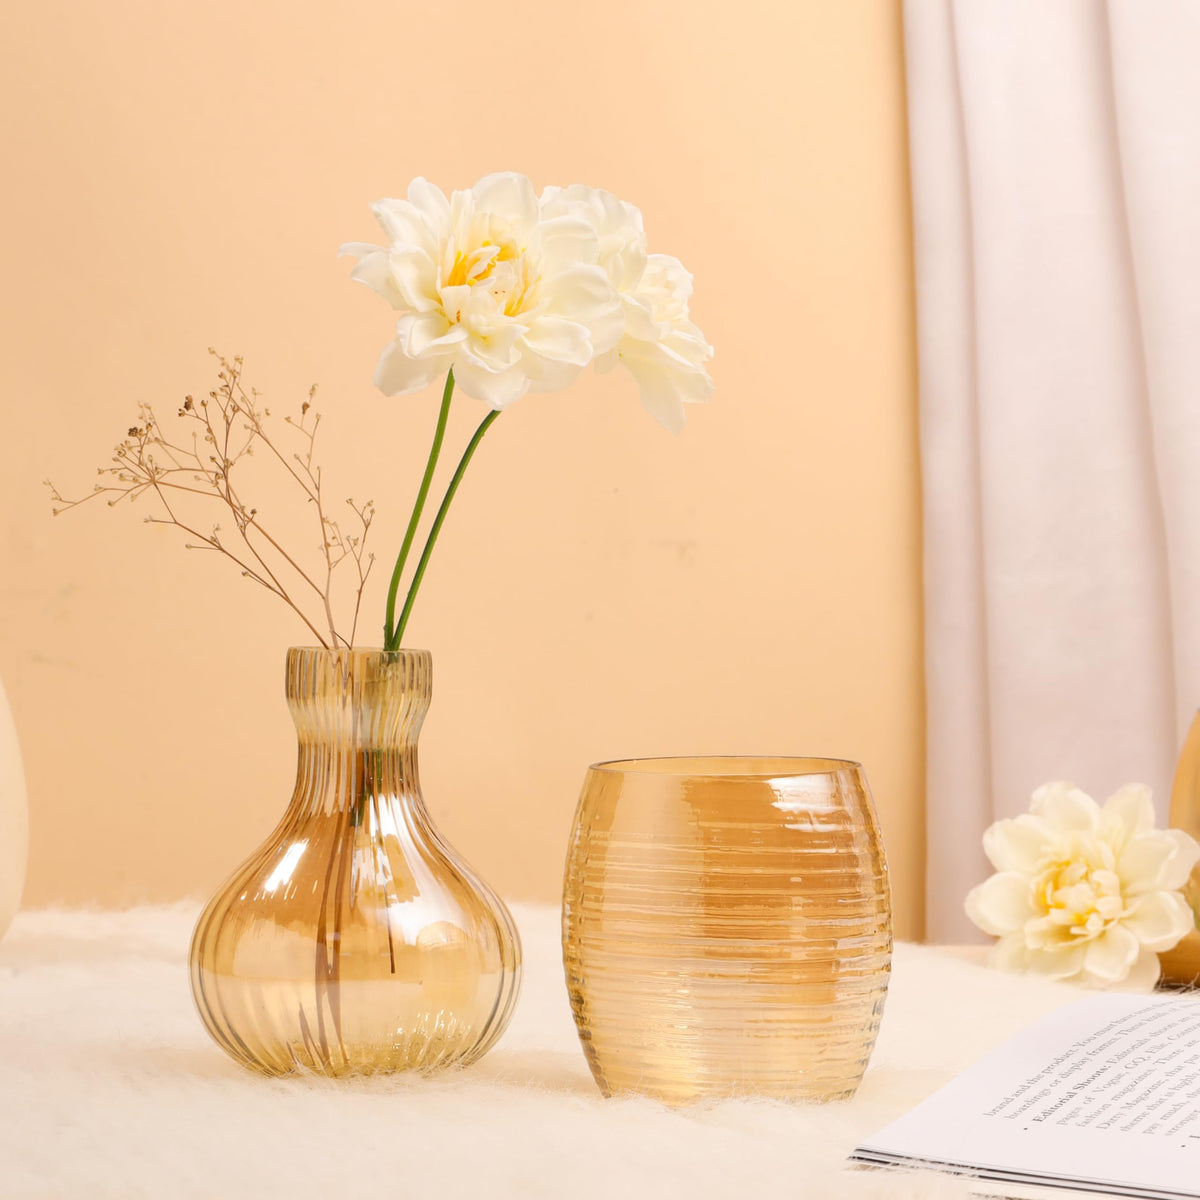 Gleevers Diwali Gift Pack |Diwali Gift Pack of 2 with Vase & Tea Light Holder | Diwali Gift Item (Tea Light Holder + Ceramic Vase (Yellow))